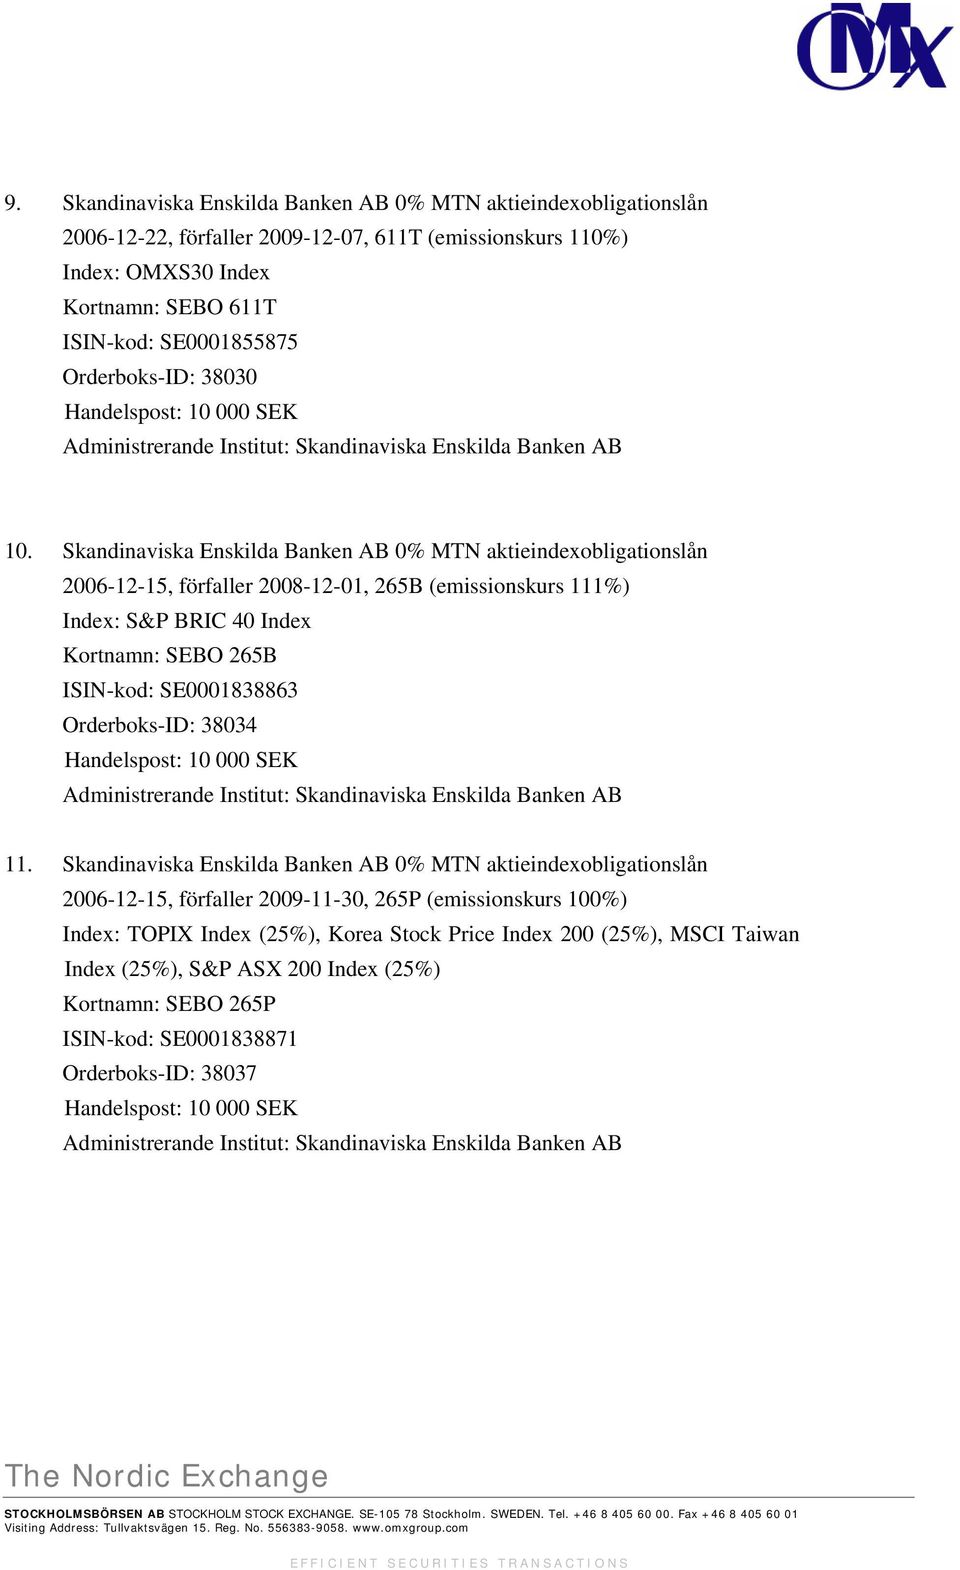 Skandinaviska Enskilda Banken AB 0% MTN aktieindexobligationslån 2006-12-15, förfaller 2008-12-01, 265B (emissionskurs 111%) Index: S&P BRIC 40 Index Kortnamn: SEBO 265B ISIN-kod: